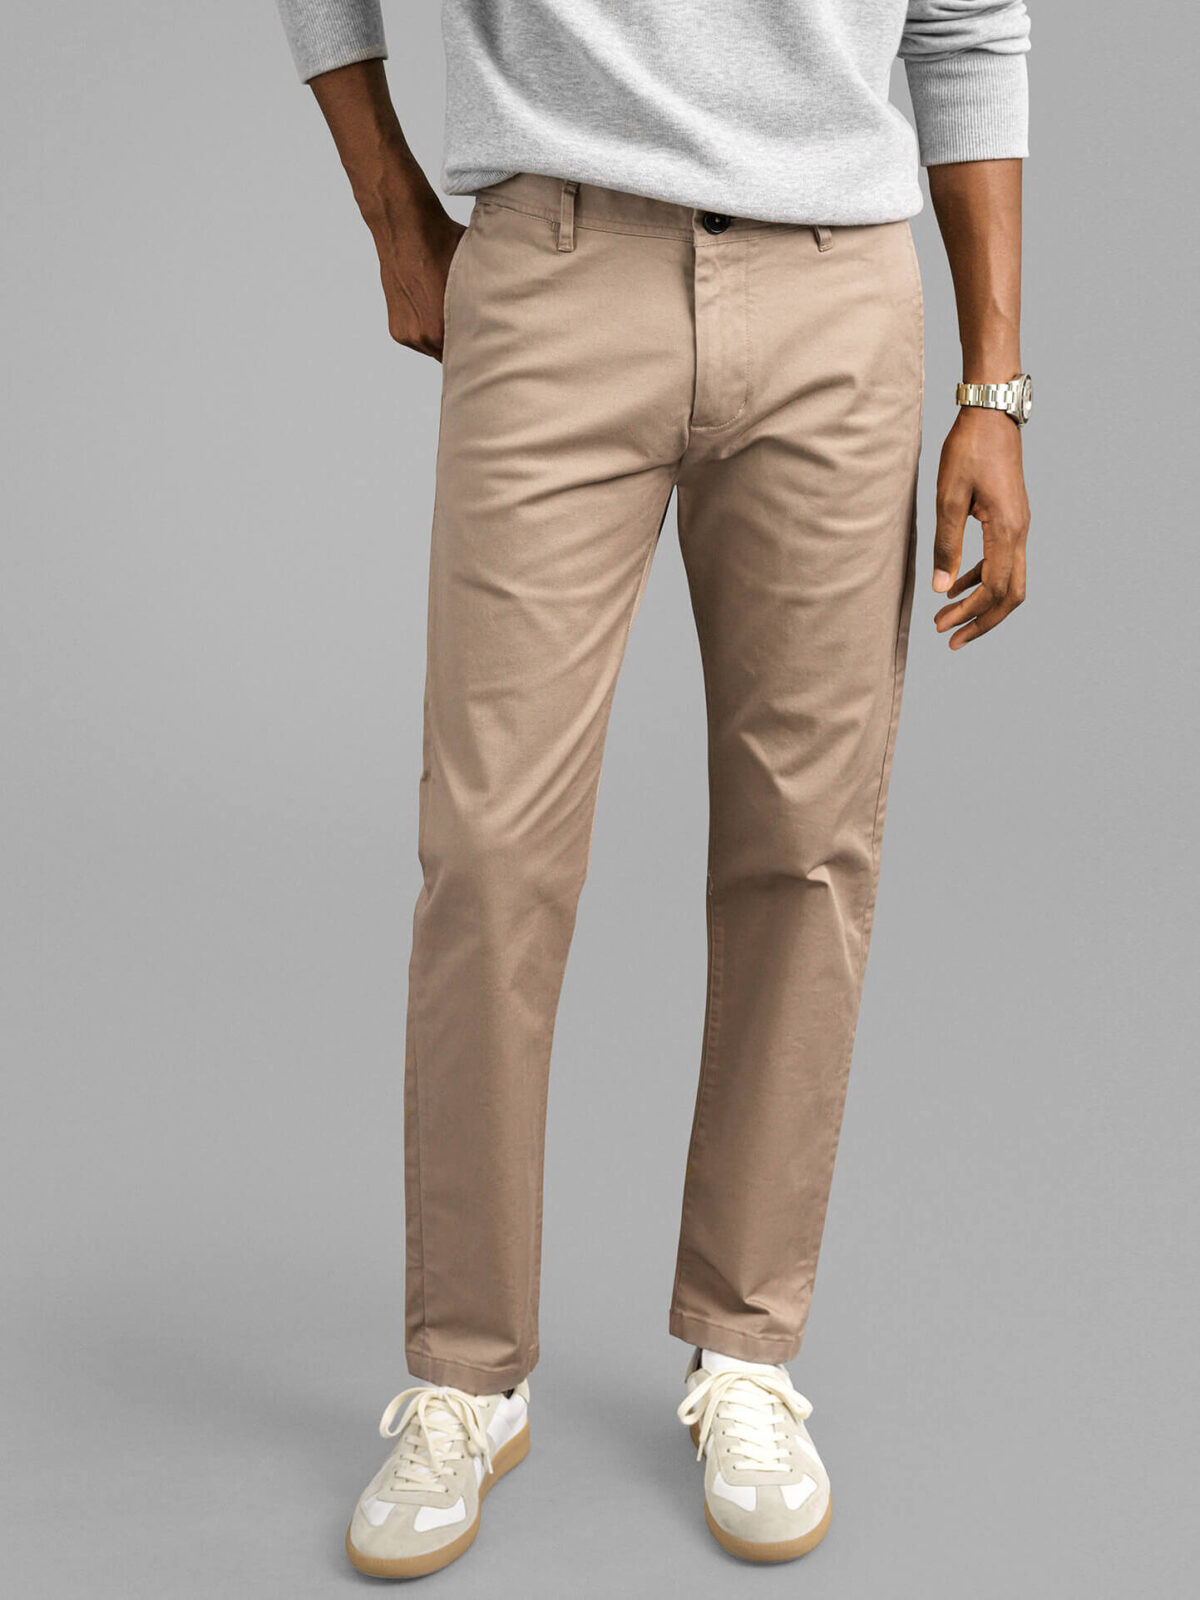 Men's Flat Front Pant Chairman's Collection - KHAKI - 100% COTTON –  Hardwick.com